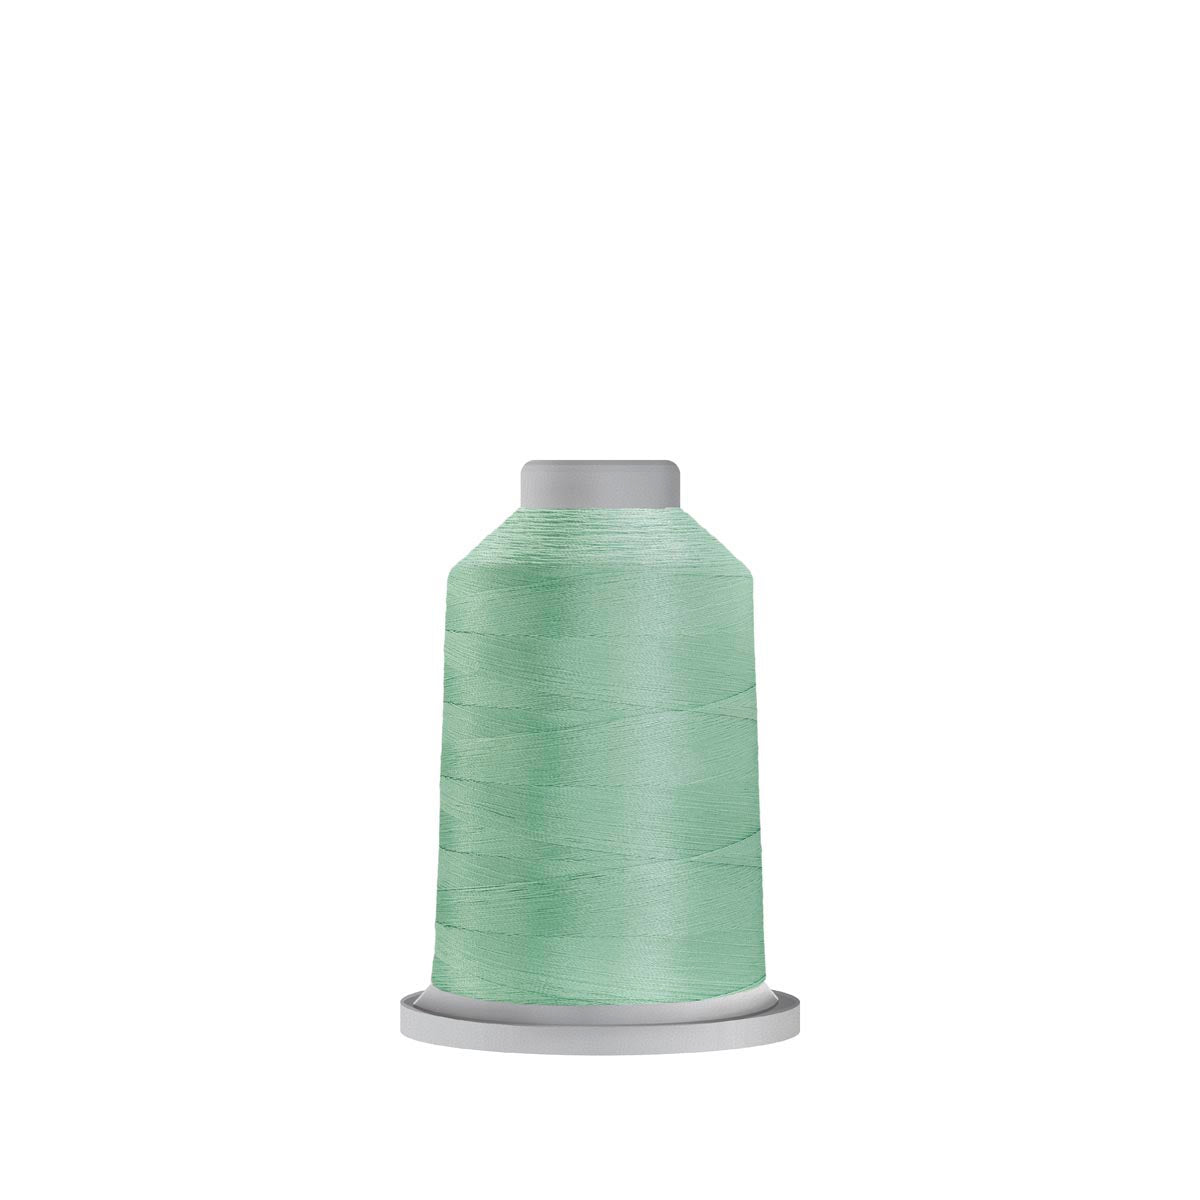 30317 Magic Mint Glide Polyester Thread - 1,100 yards Mini Spool Fil-Tec